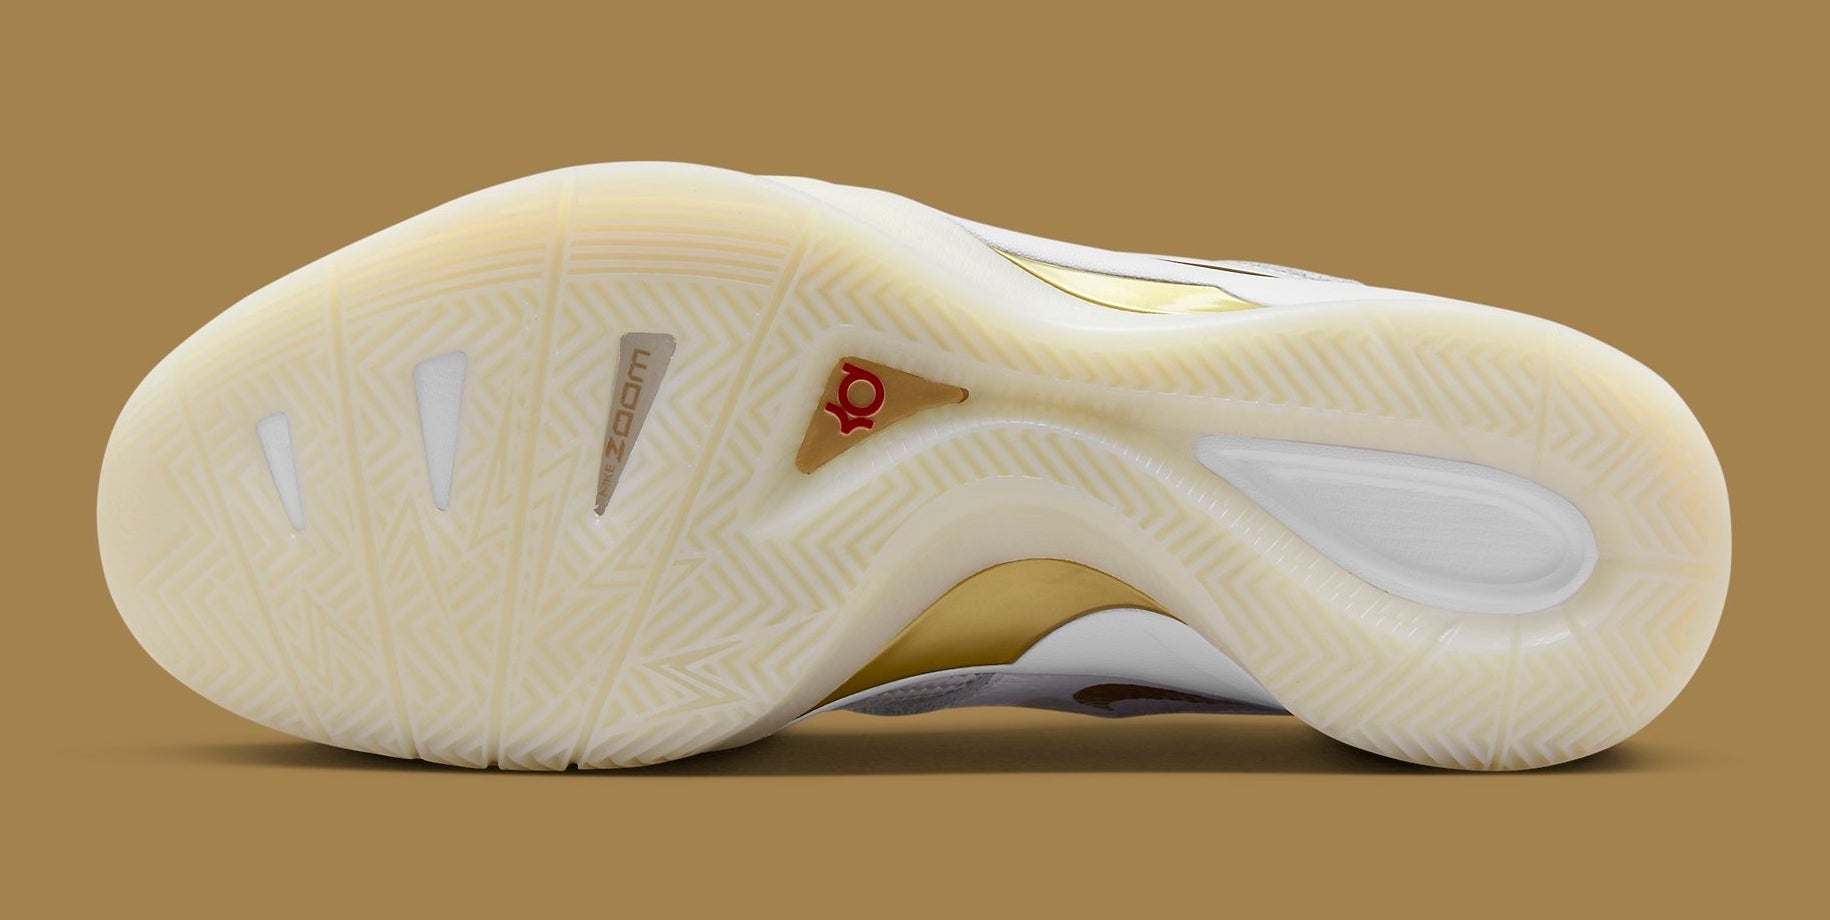 Nike KD 3 III White Gold Release Date DZ3009-100 Sole